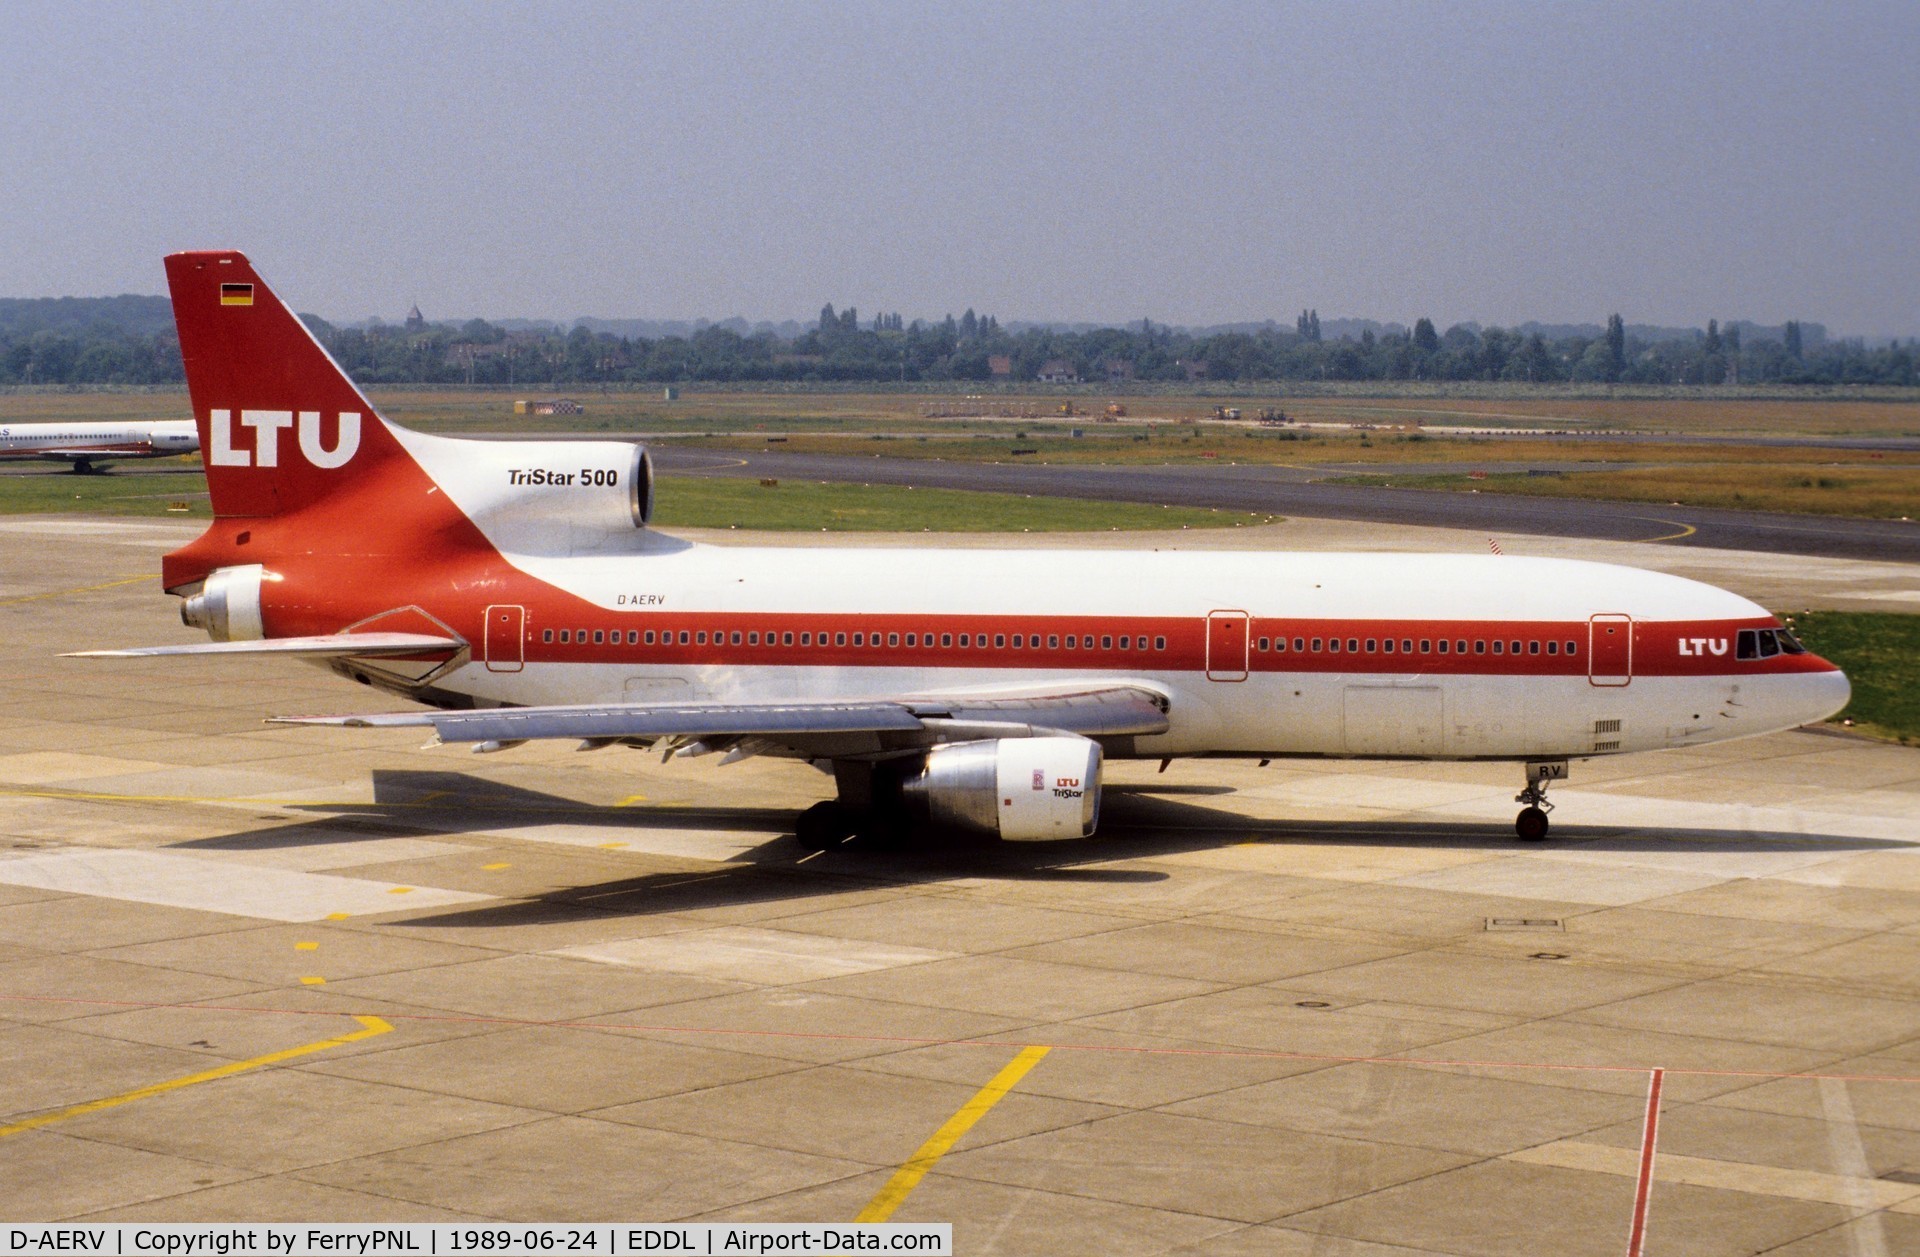 D-AERV, 1981 Lockheed L-1011-385-3 Tristar 500 C/N 193Y-1195, LTU TriStar 500 taxyiing for departure